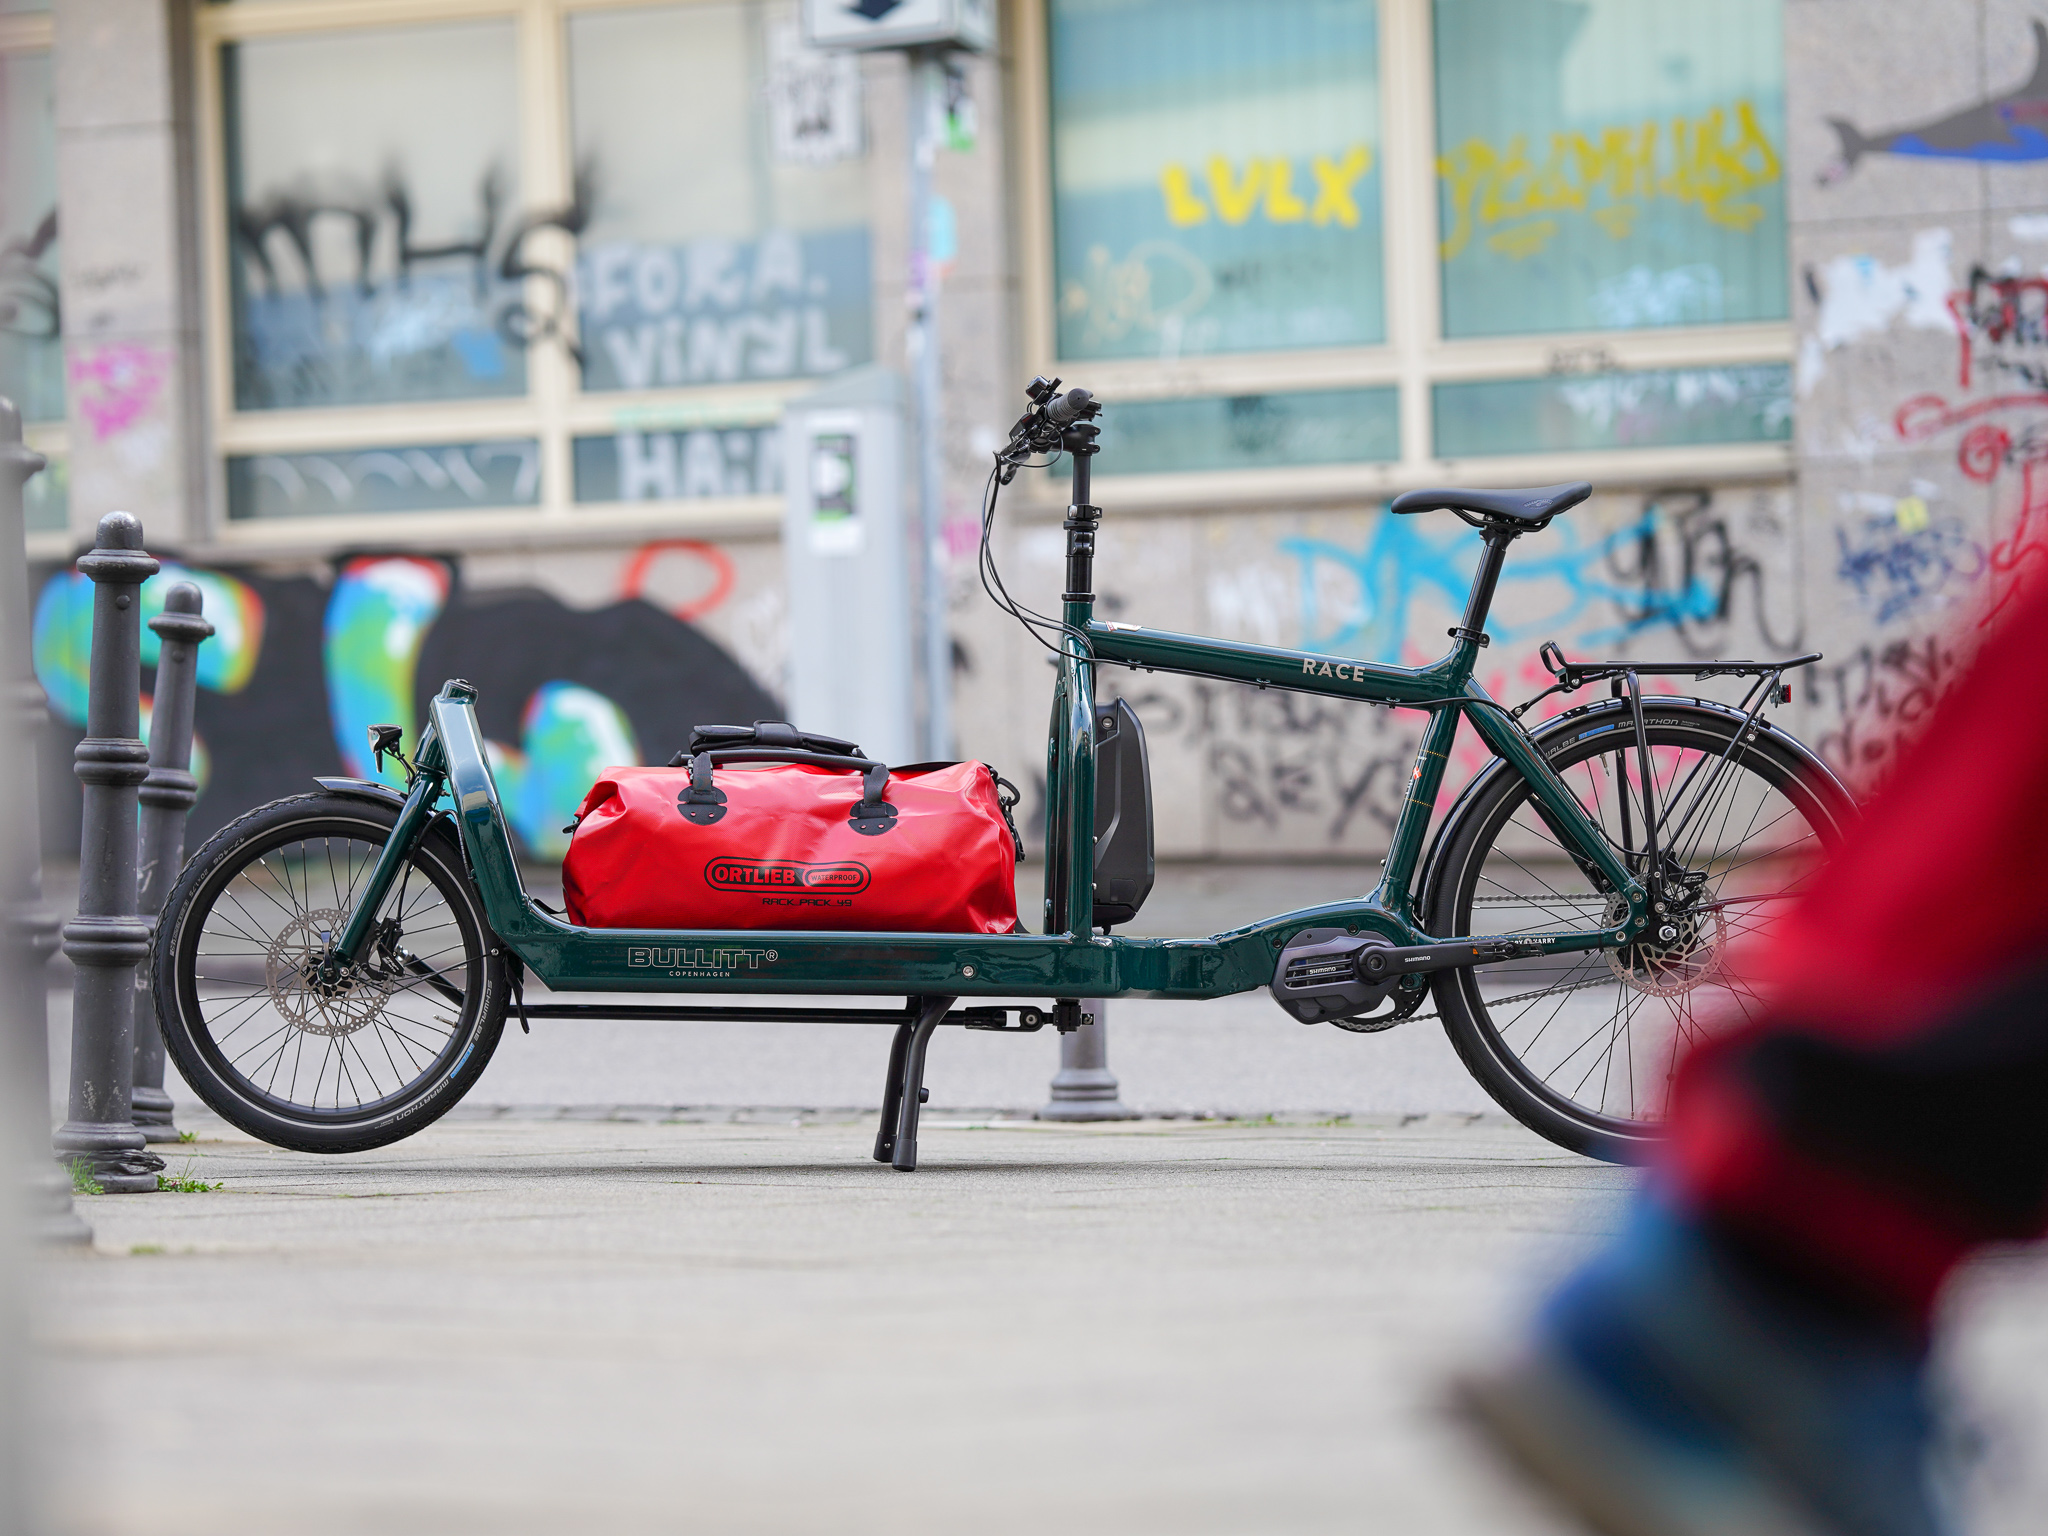 BULLITT Transportrad Race (dunkelgrün) mit einer wasserdichten Transporttasche von Ortlieb in rot
Foto: neomesh.